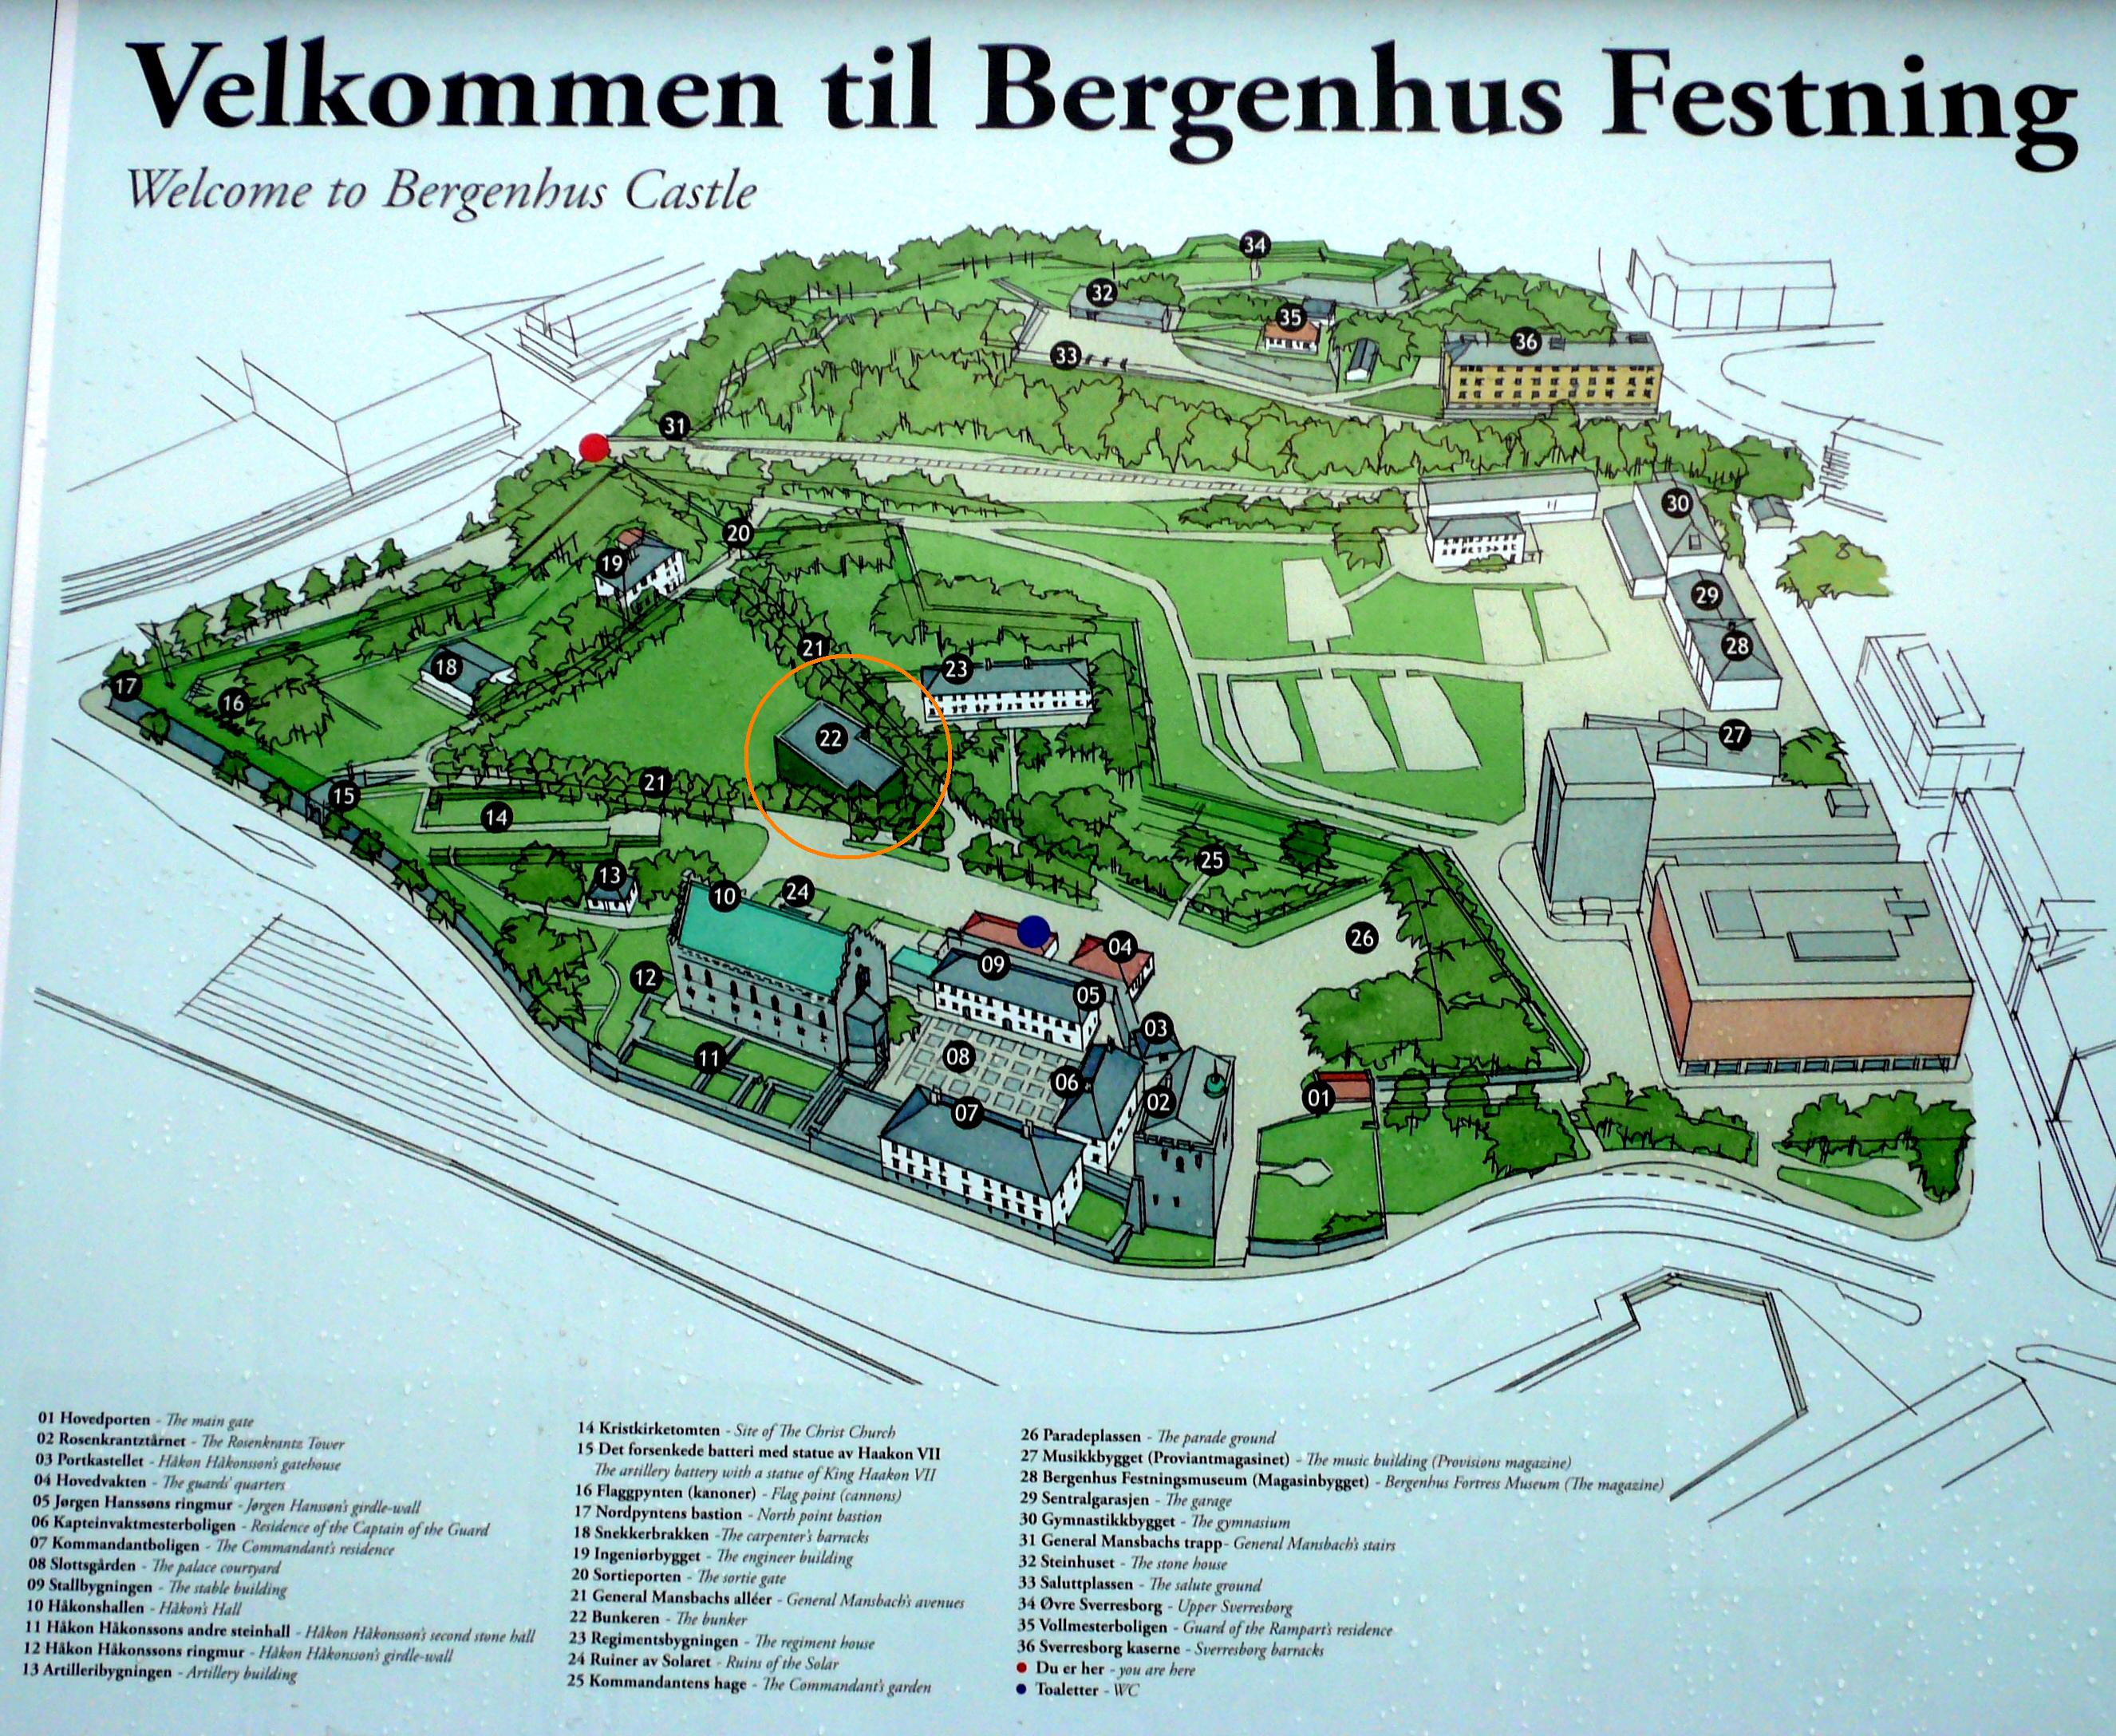 Bergenhus_Castle_sign.jpg